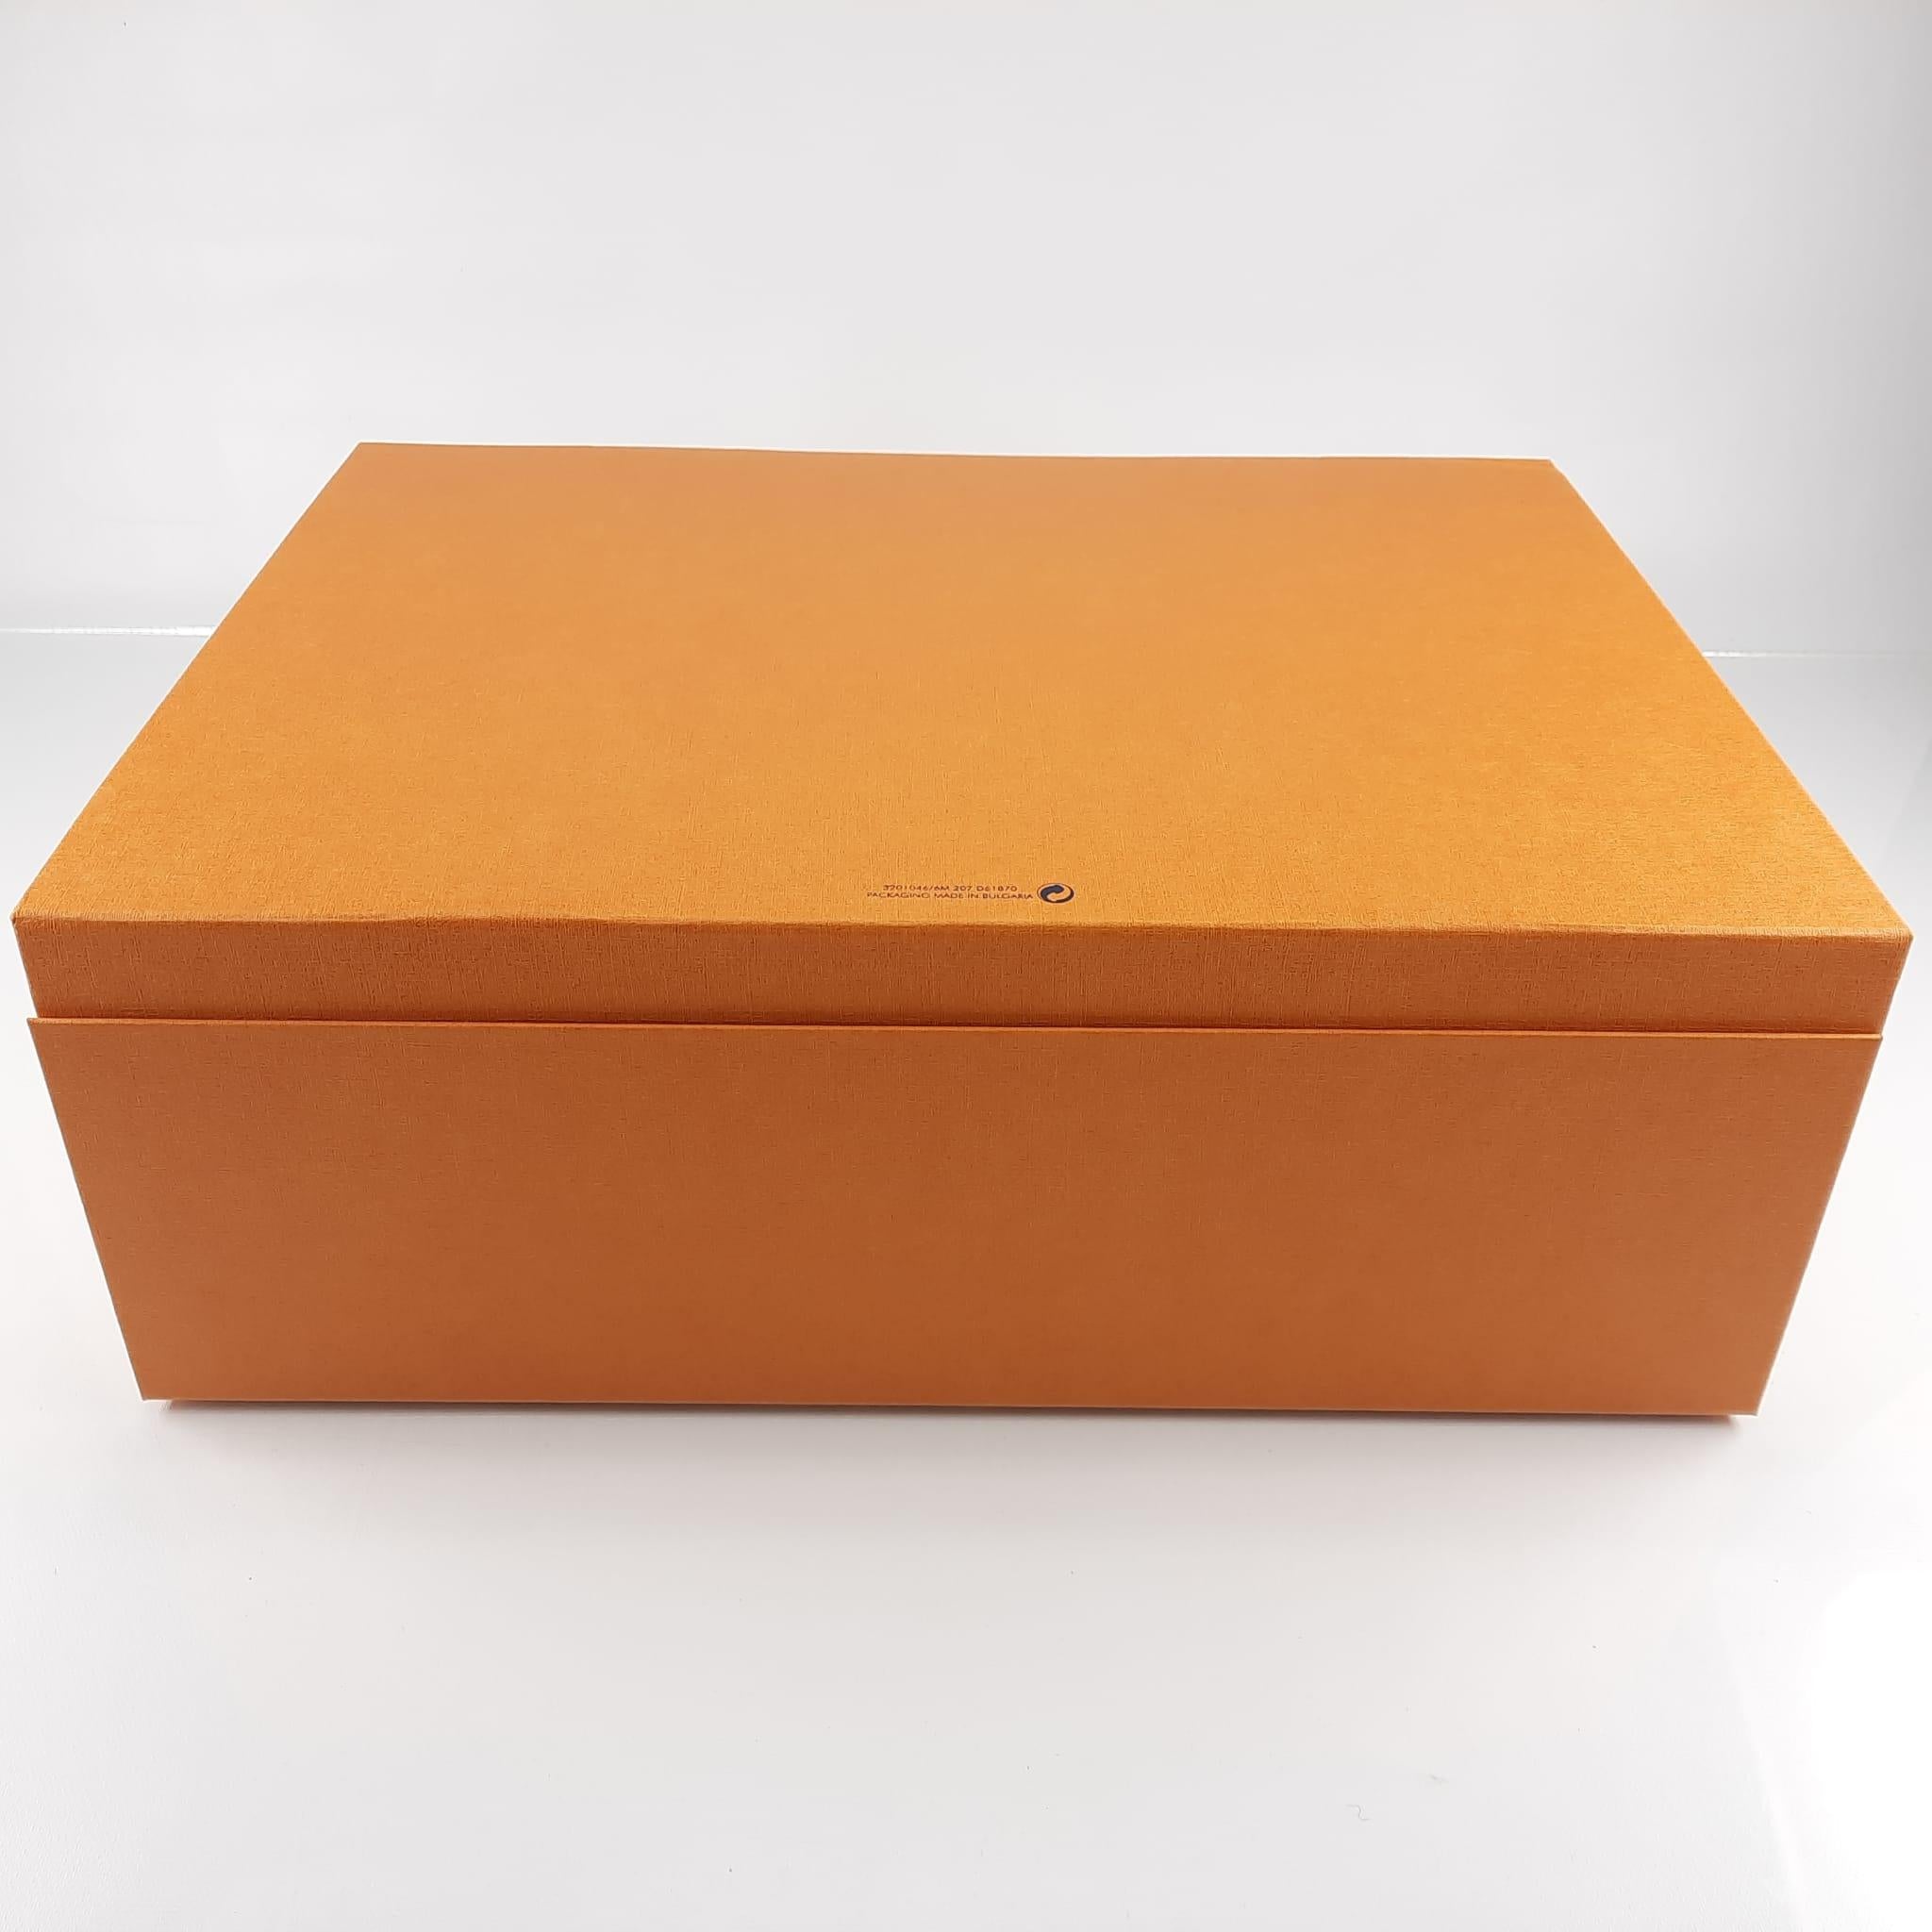 Louis Vuitton Box 2